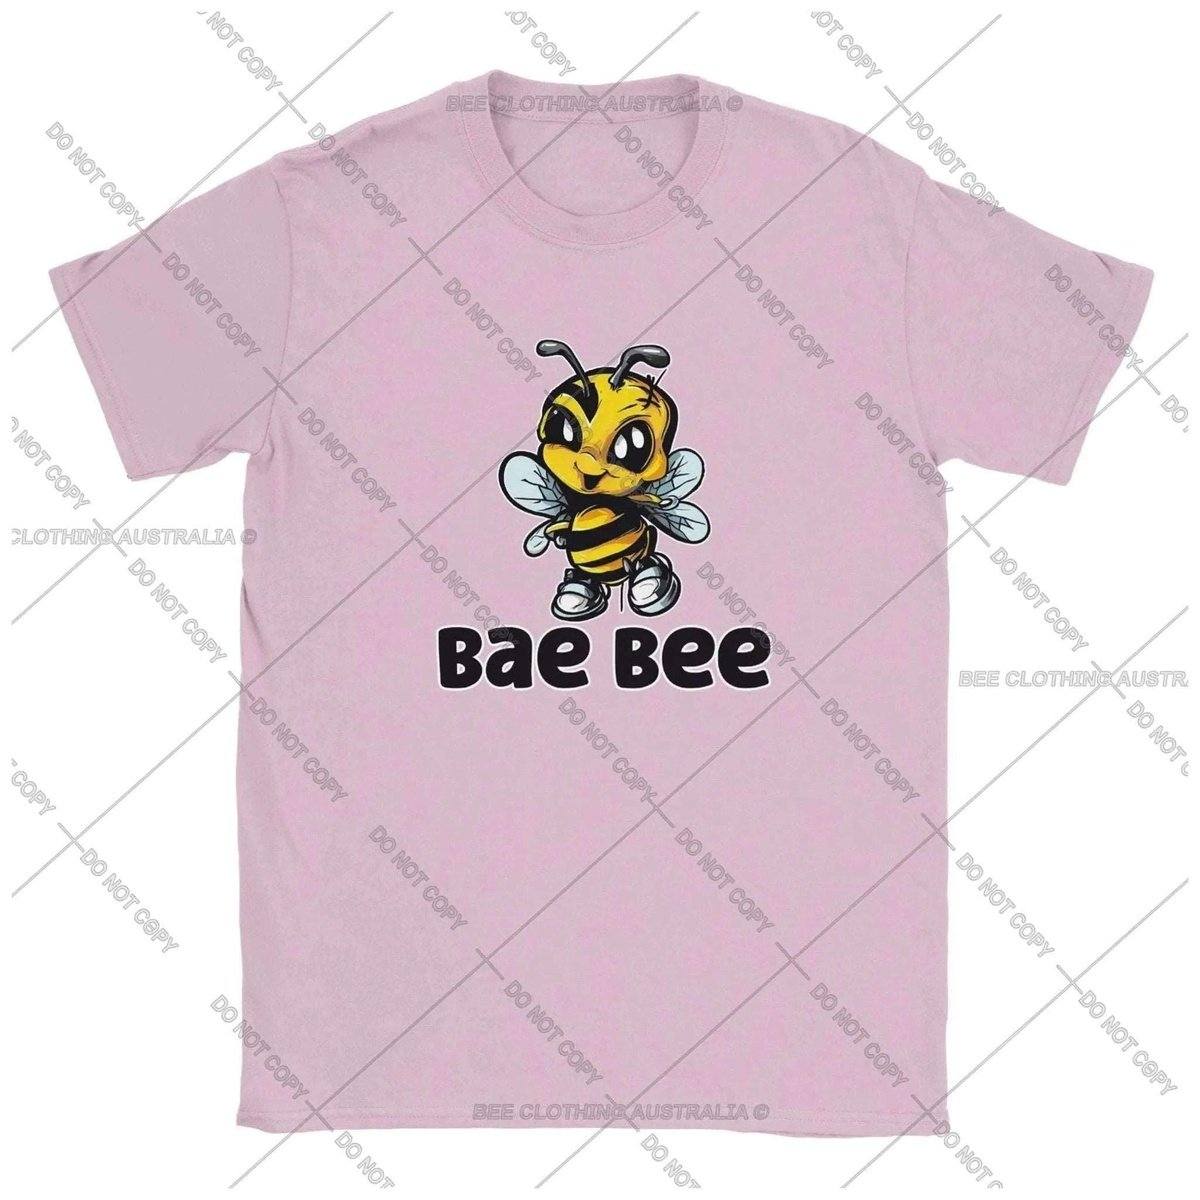 Bae Bee - Baby Bee Kids T-shirt Australia Online Color Light Pink / XS